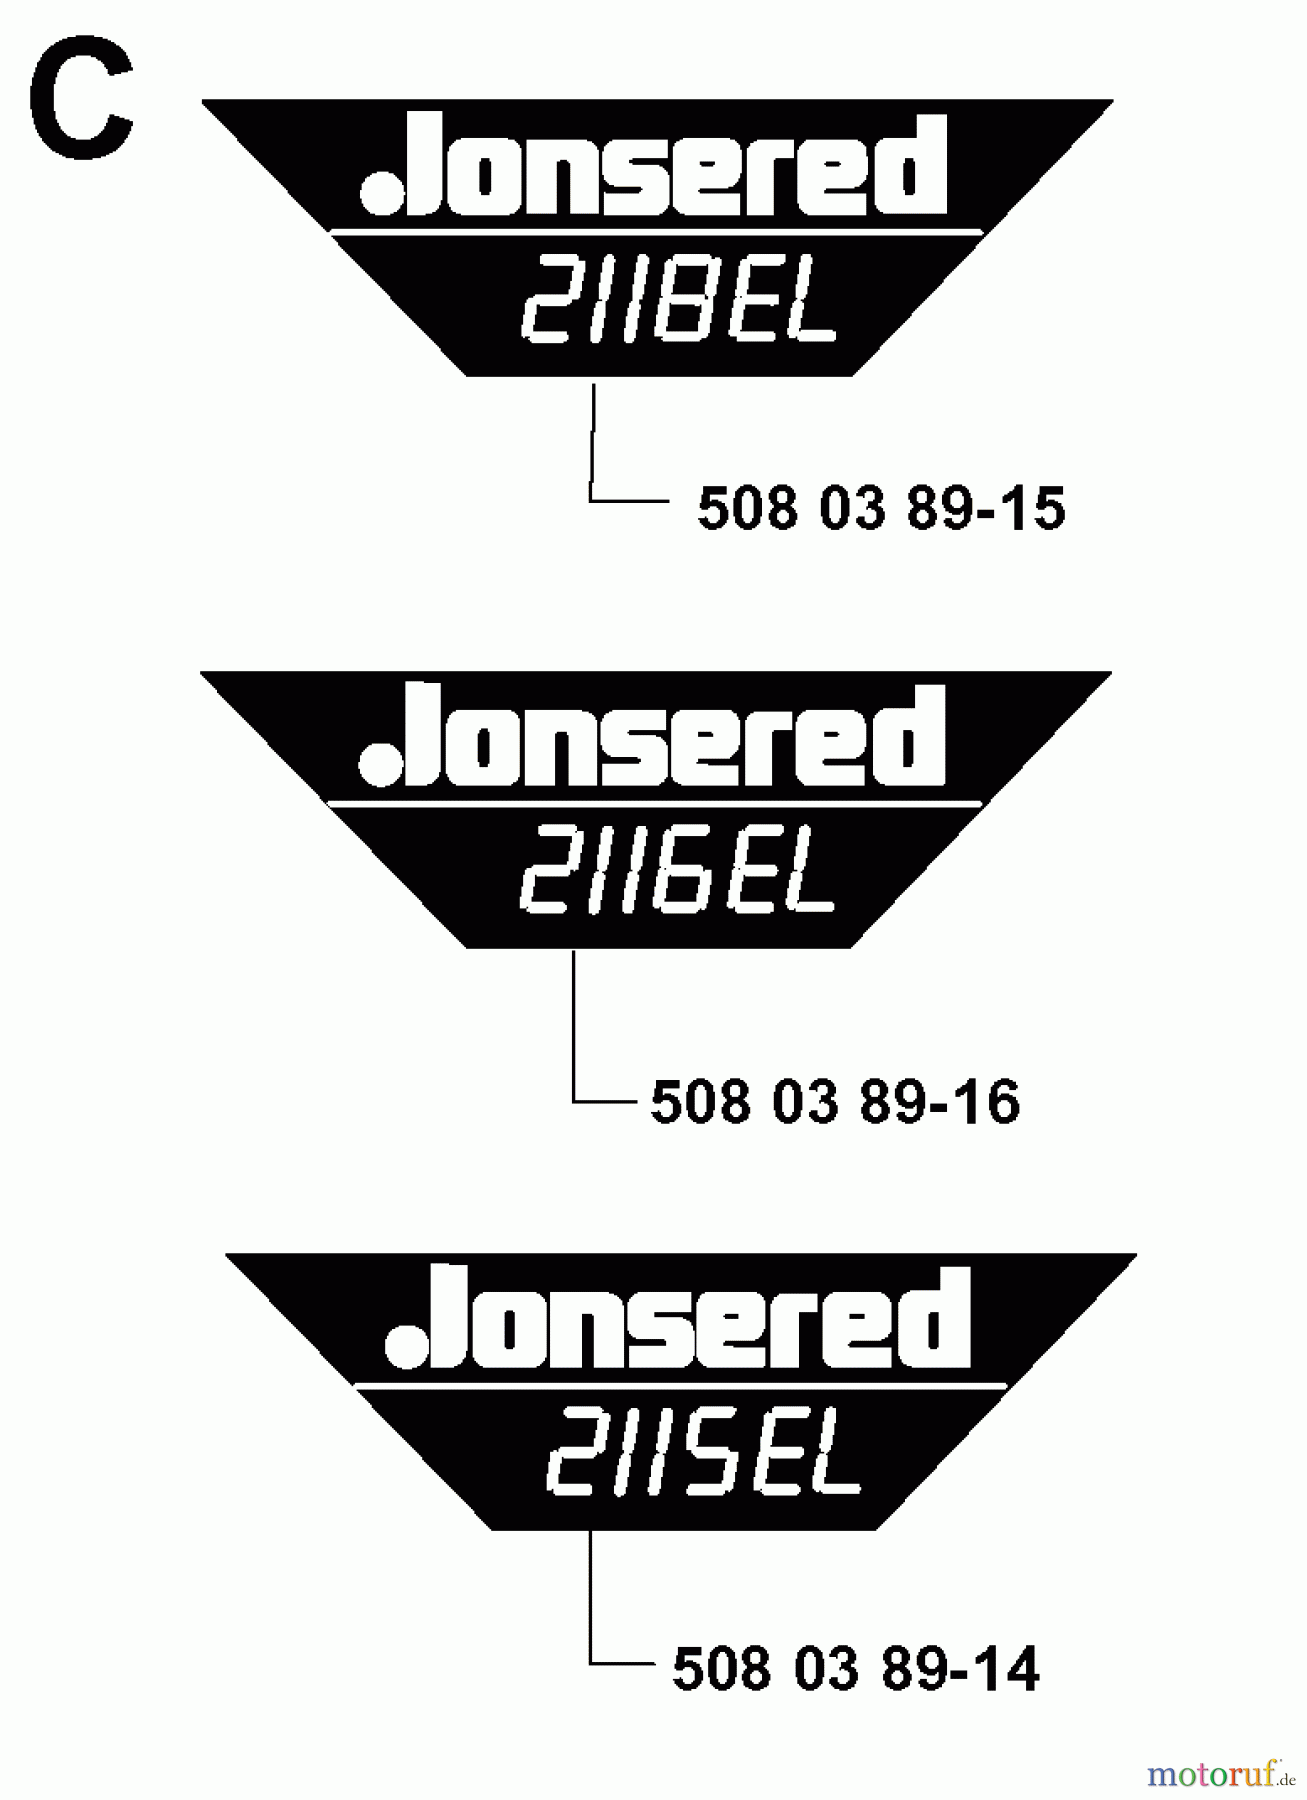  Jonsered Motorsägen 2115EL - Jonsered Chainsaw (2000-02) DECALS